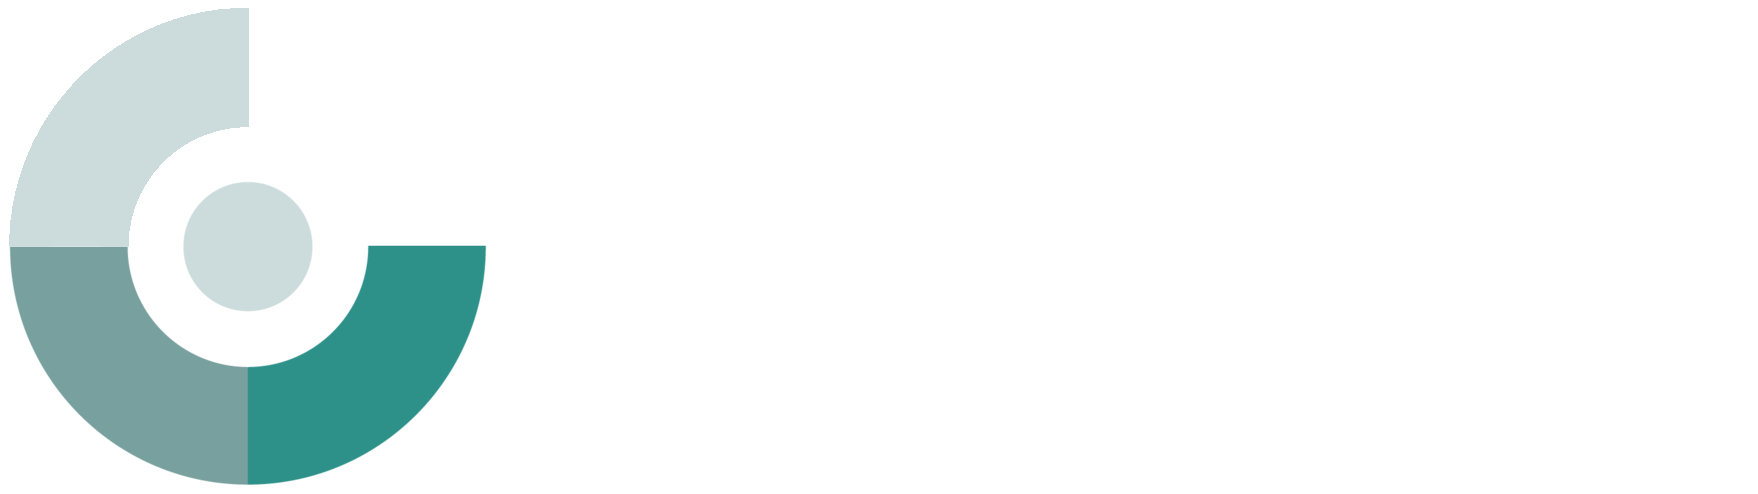 Garden City Equity